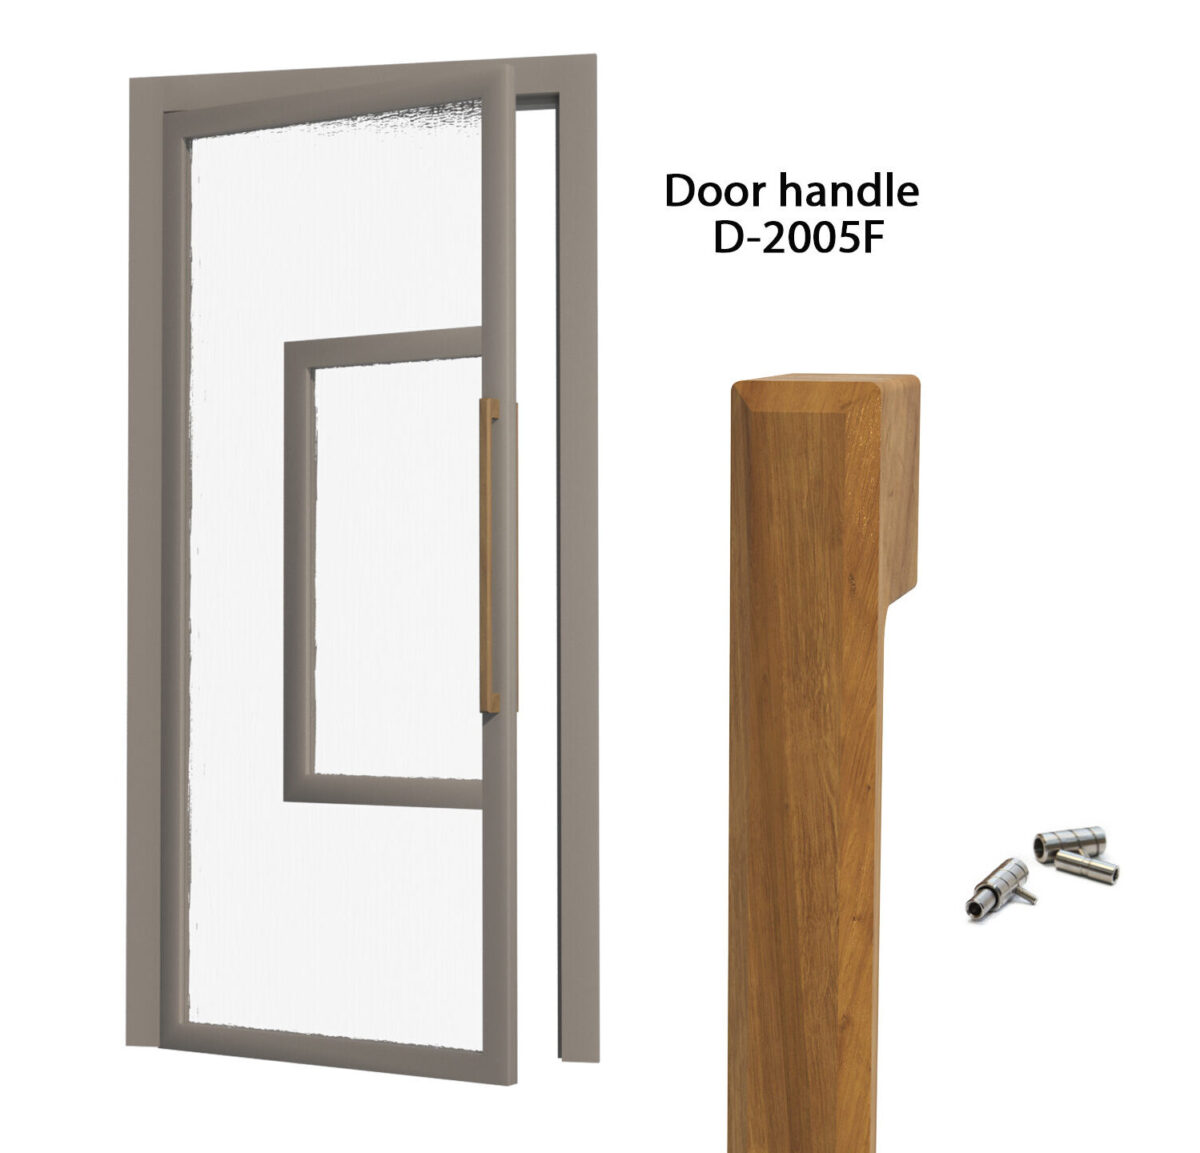 Solid oak door handles D-2005F set of 2